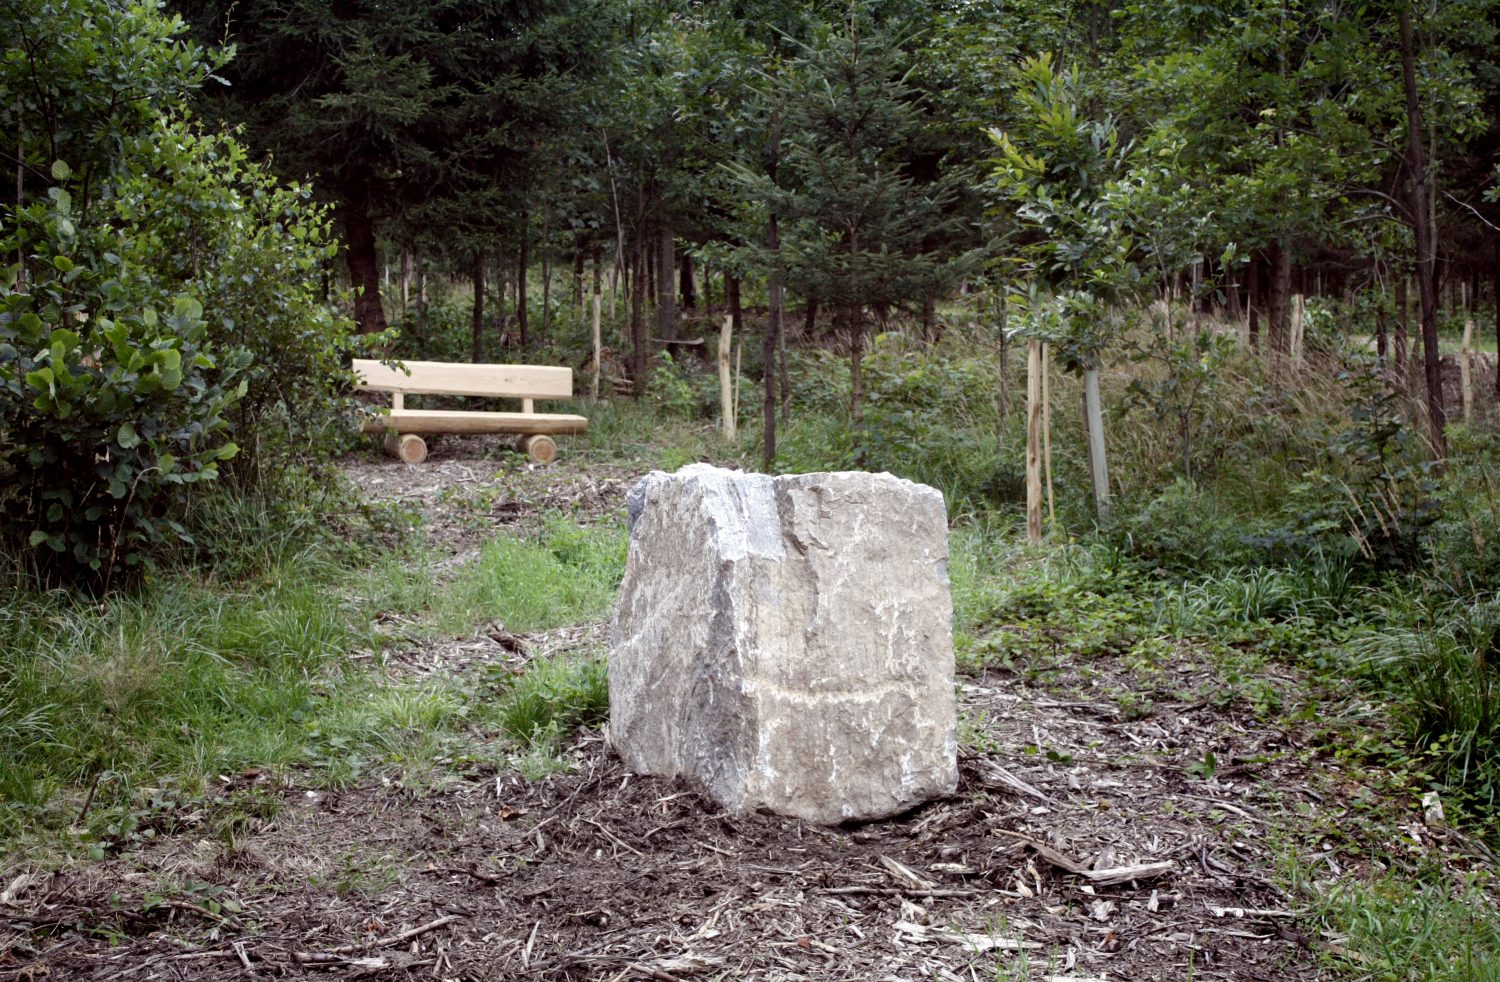 Holzbank und Stein im Wald- und Naturfriedhof Saale-Orla